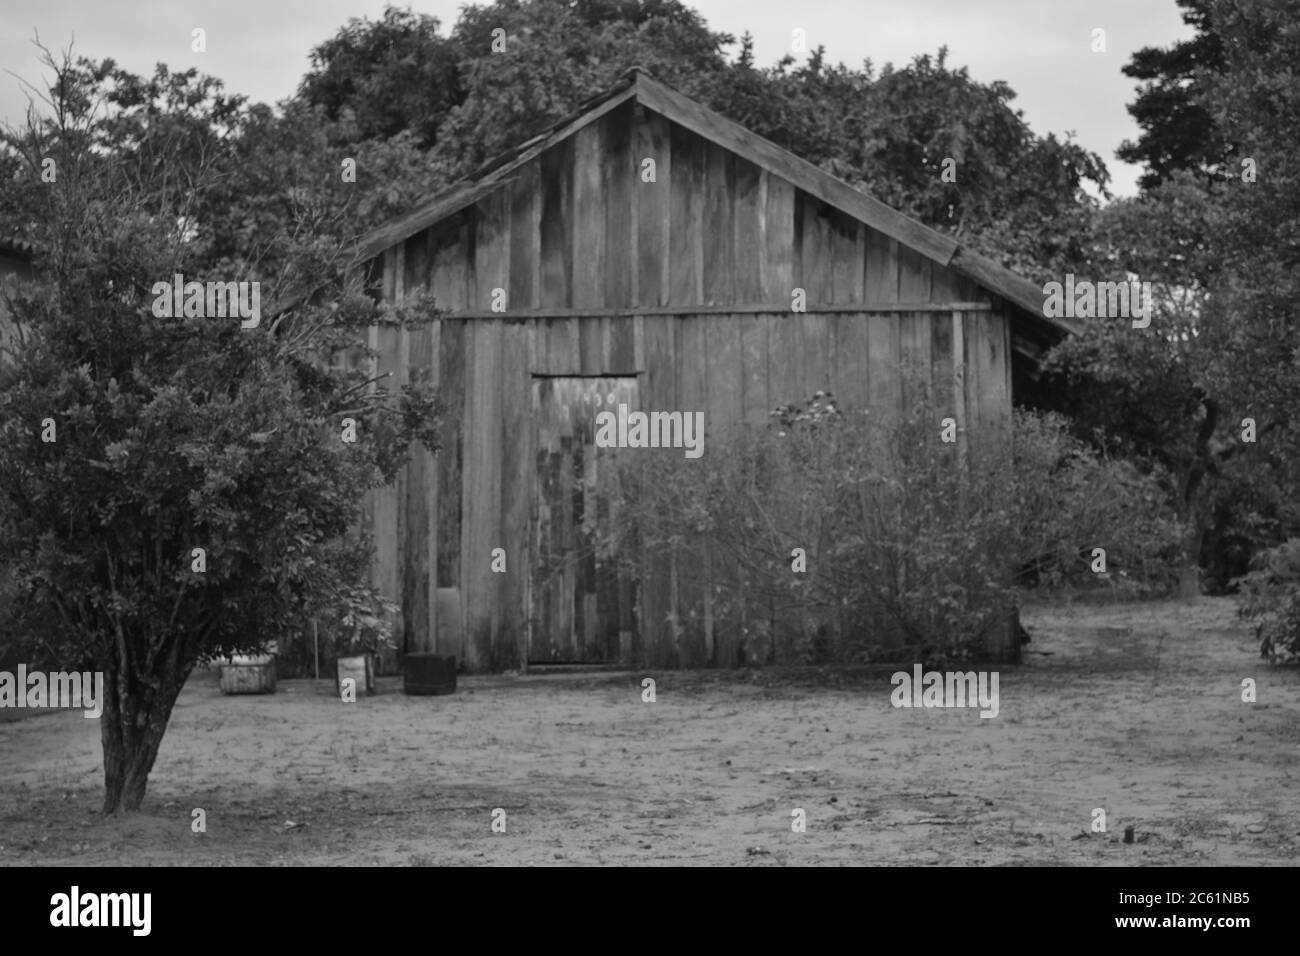 Maison en bois ou planche avec cour avant, arbres typiques et végétation, avec ciel bleu, Brésil, Amérique du Sud, photo en noir et blanc Banque D'Images